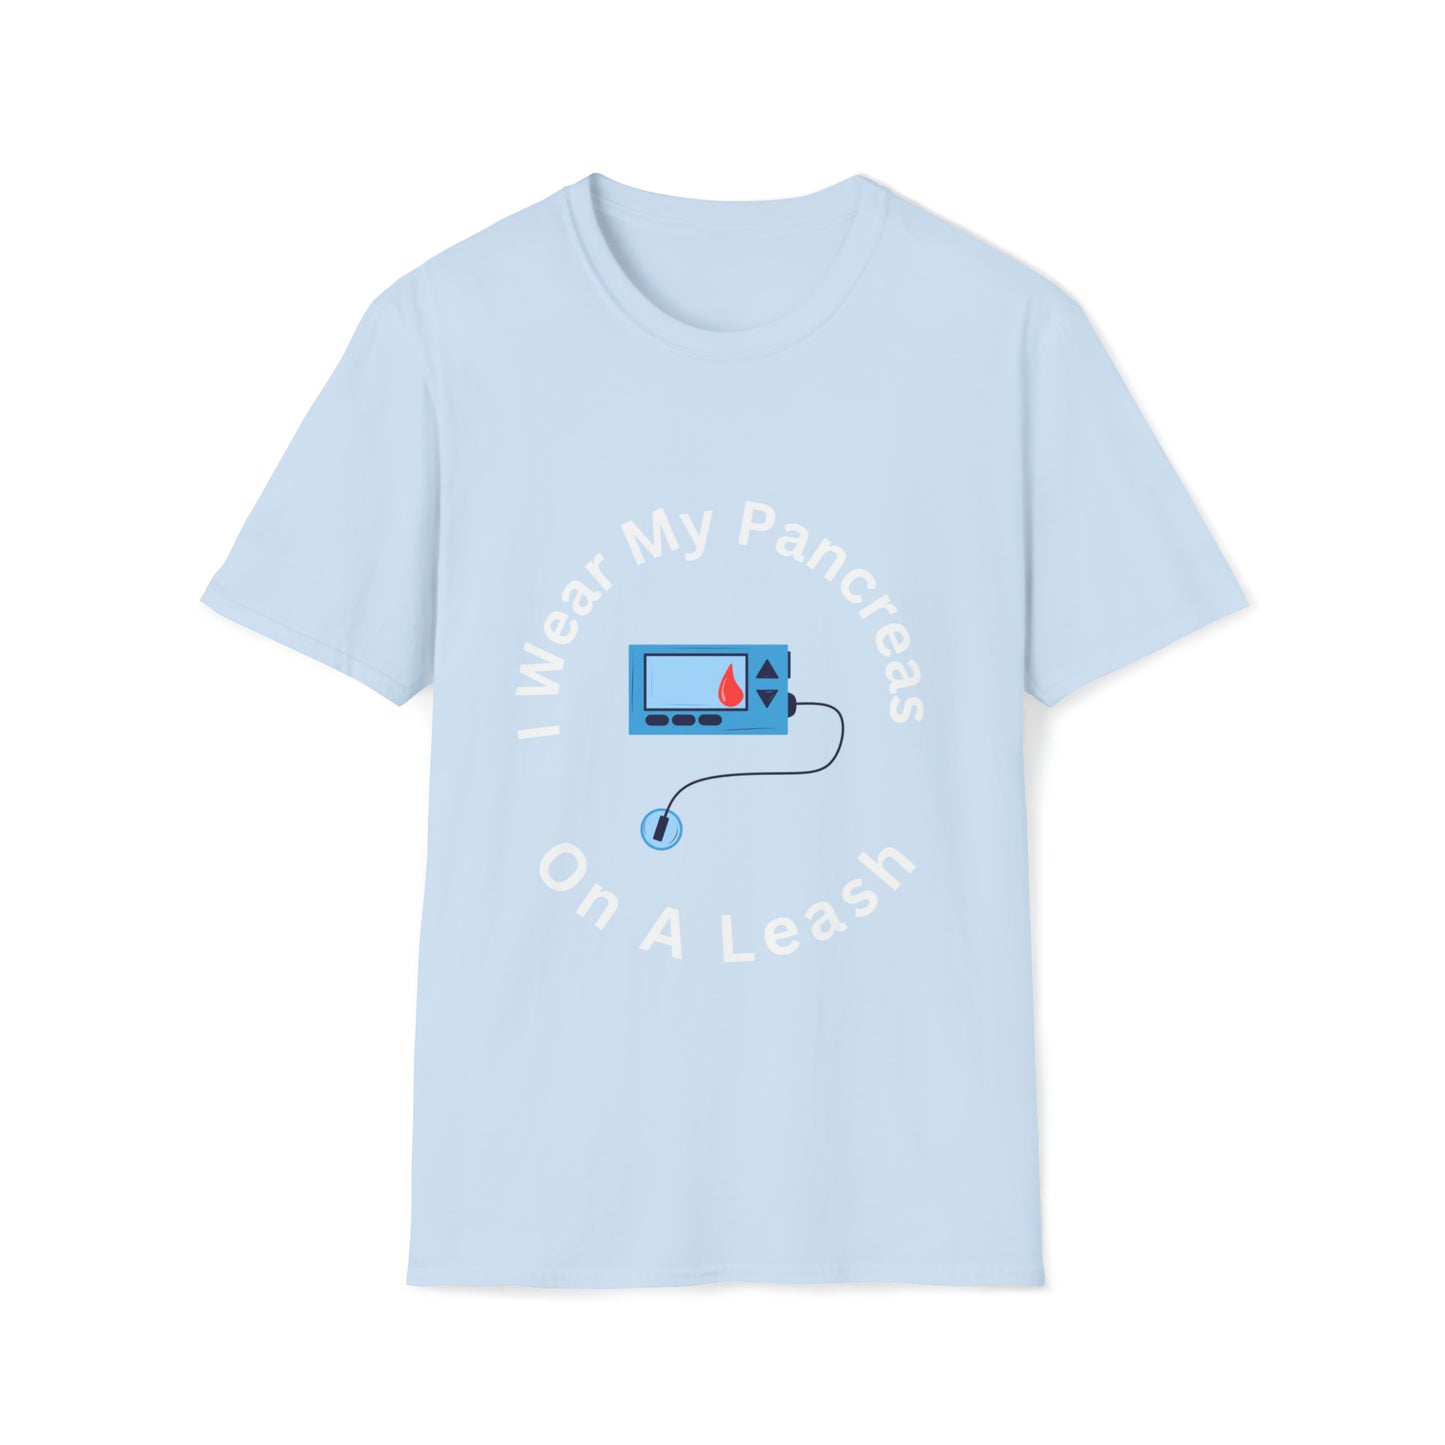 Pancreas on Leash Unisex Softstyle T-Shirt